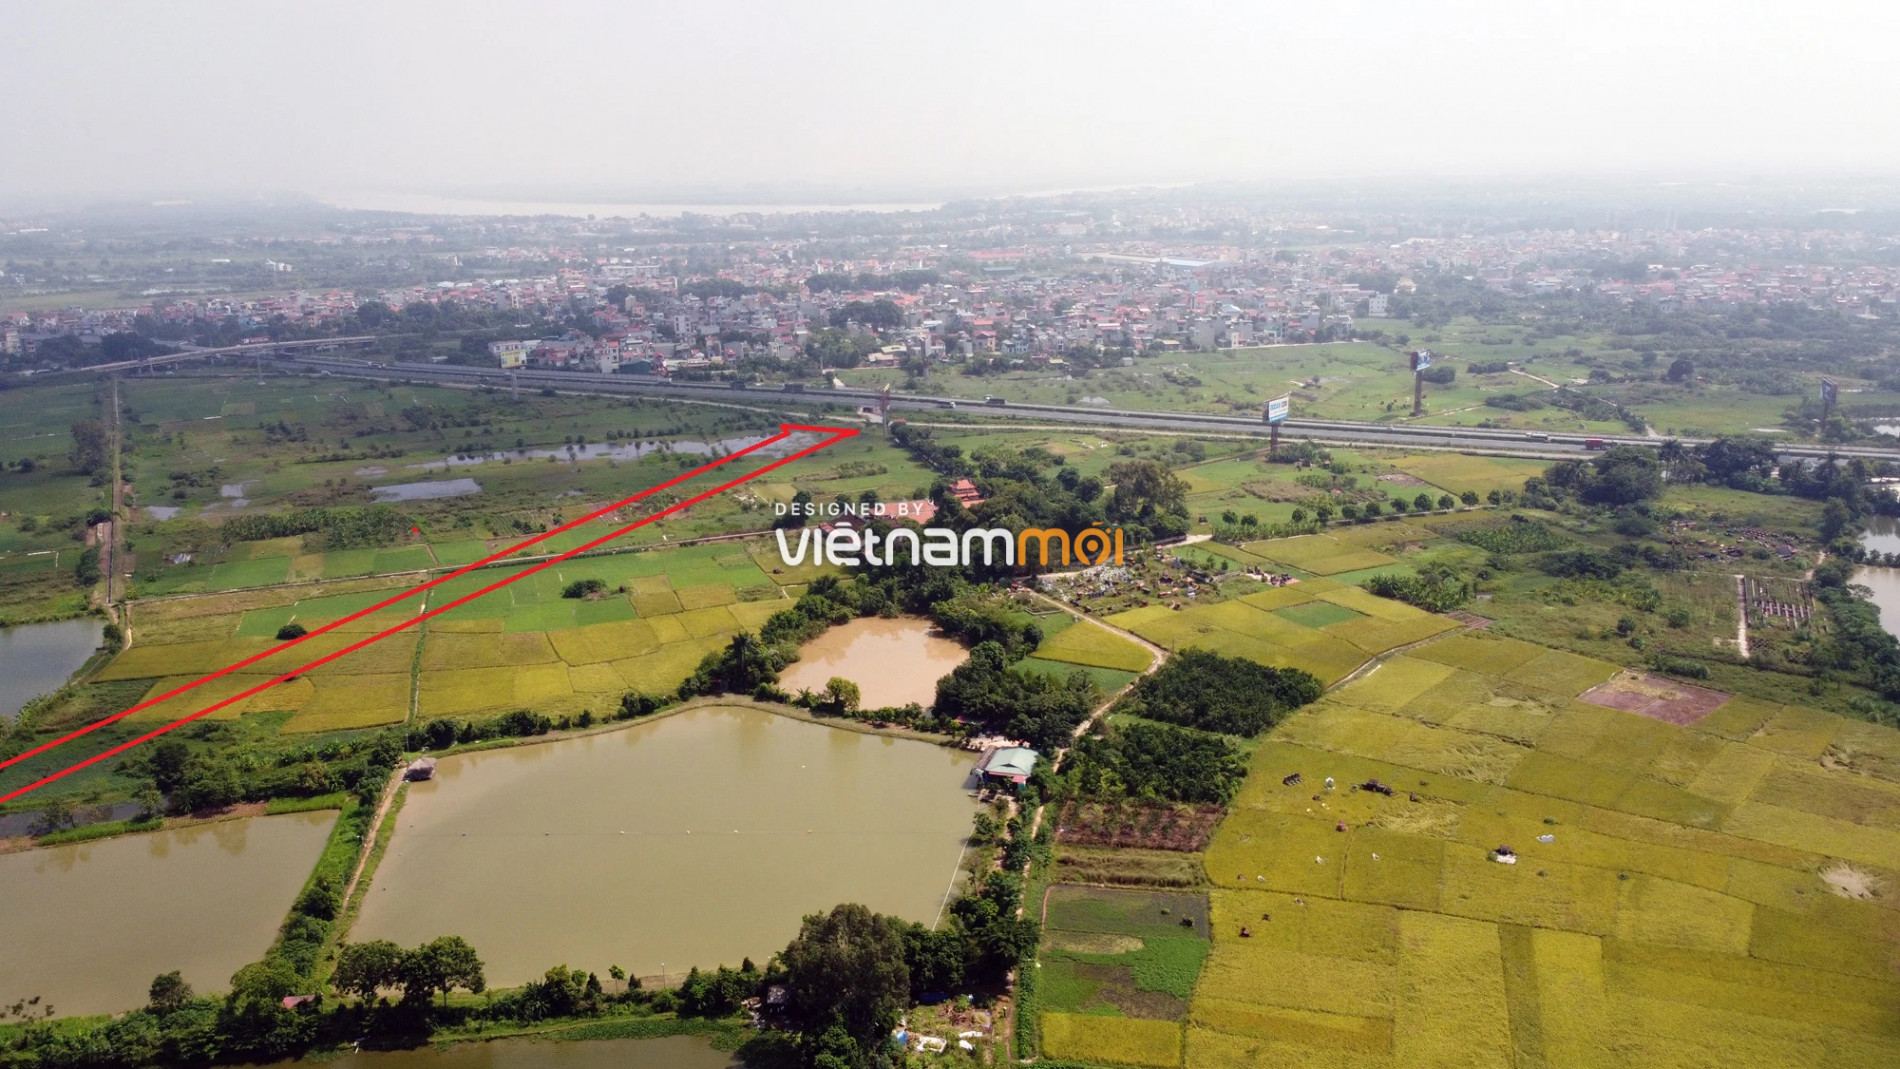  Những khu đất sắp thu hồi để mở đường ở xã Liên Ninh, Thanh Trì, Hà Nội (phần 6) - Ảnh 10.